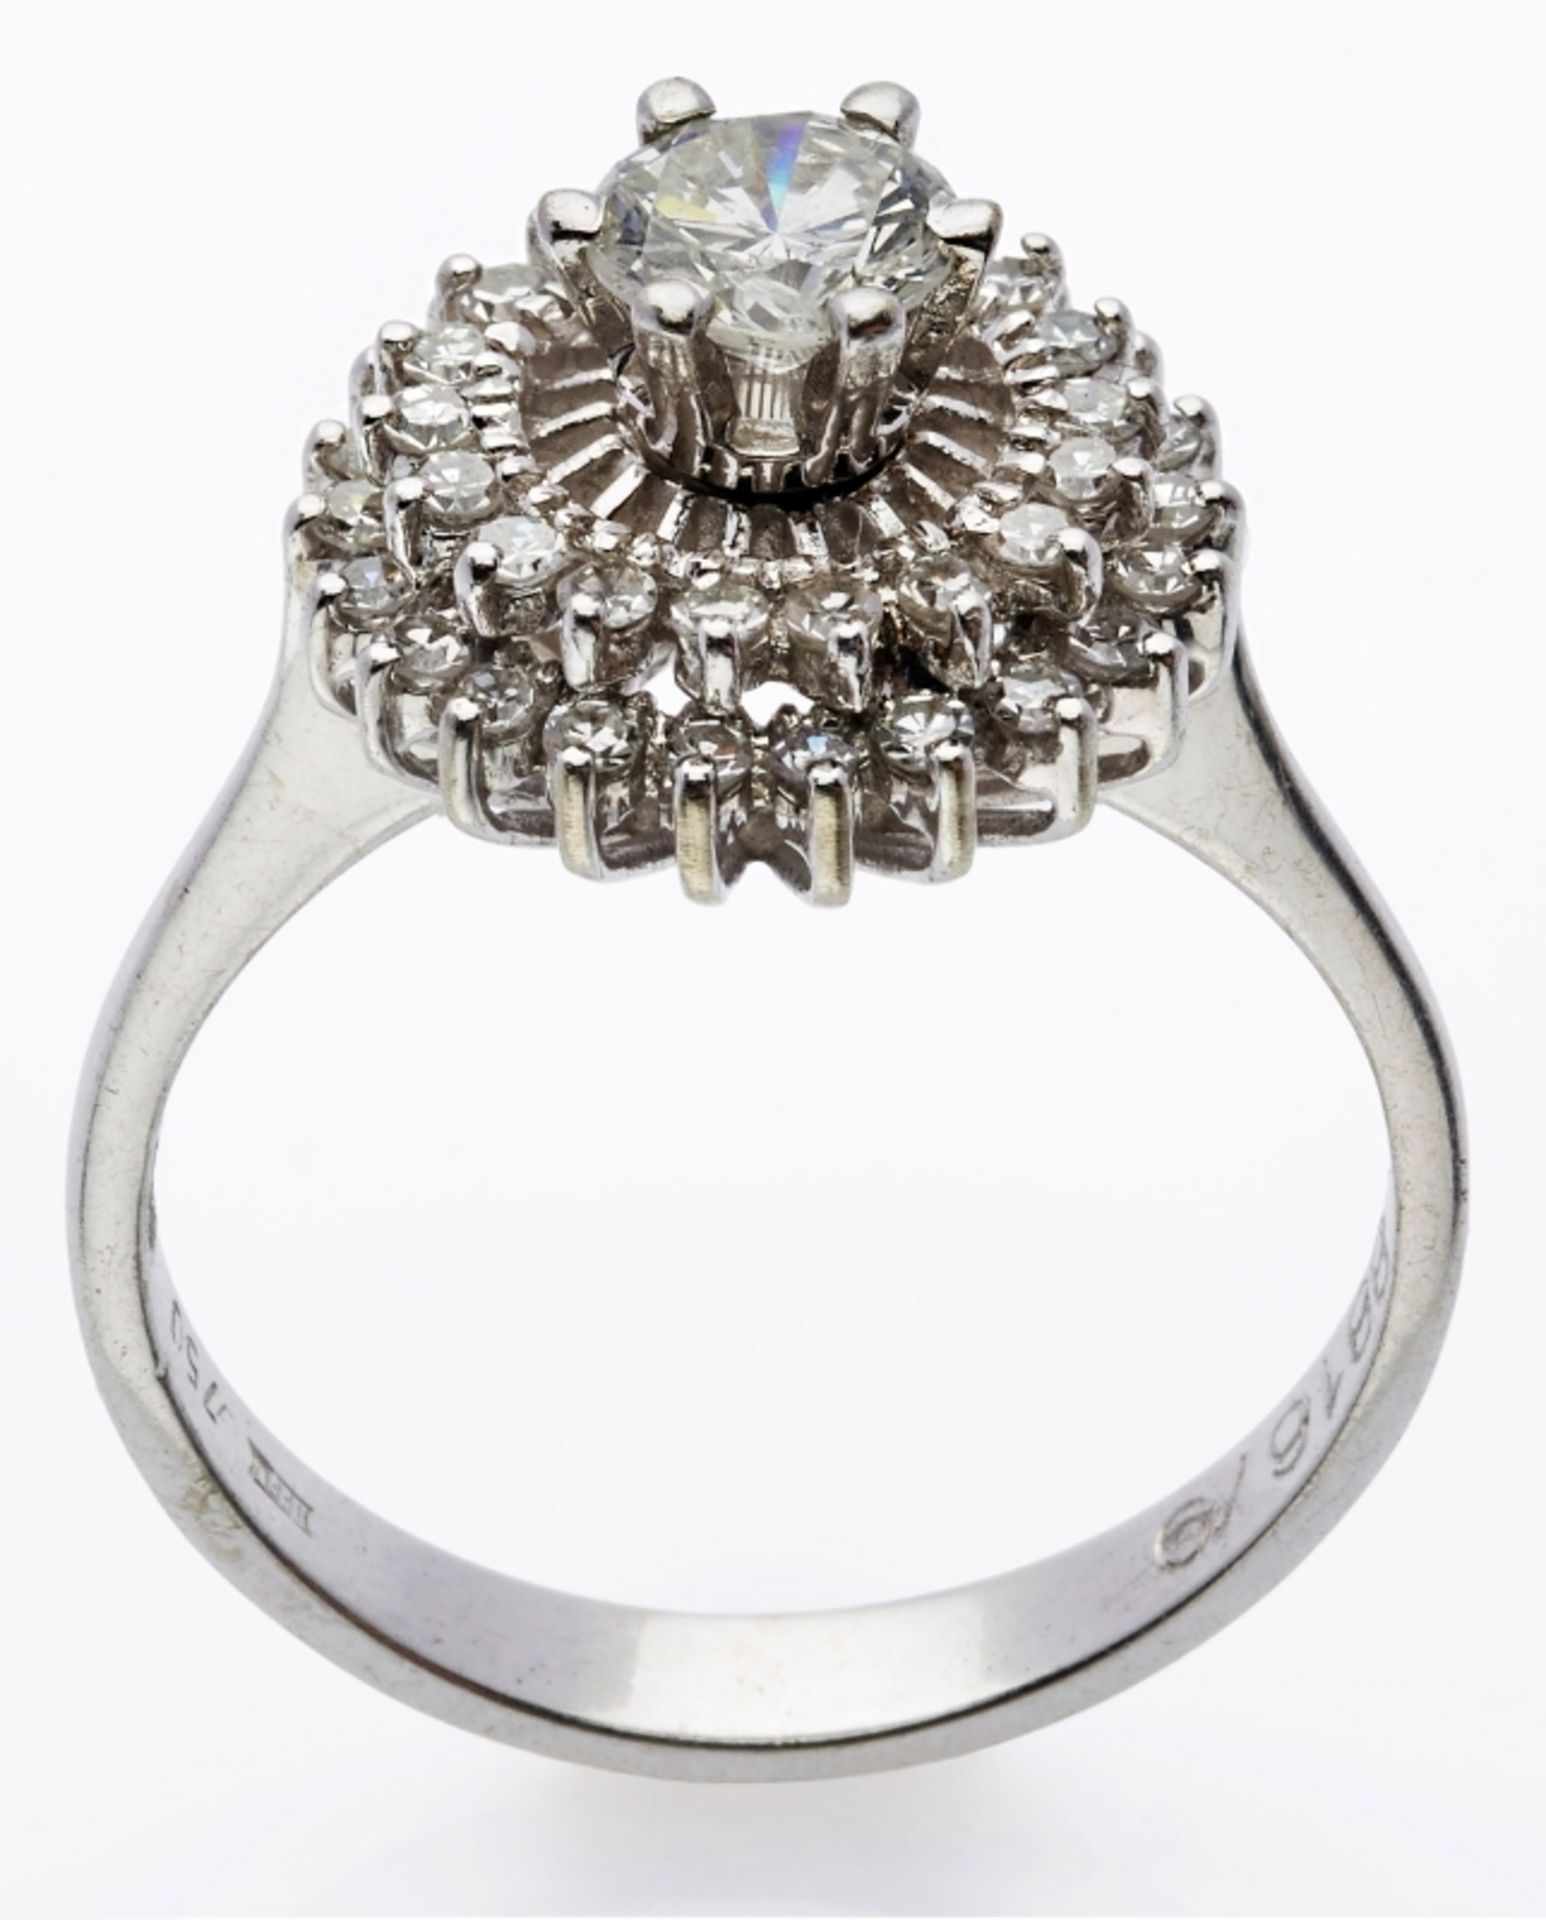 Diamant-Ring, Weissgold, mit 1 Brillant von ca. 0,50 ct sowie Achtkant-Diamanten. - Image 2 of 2